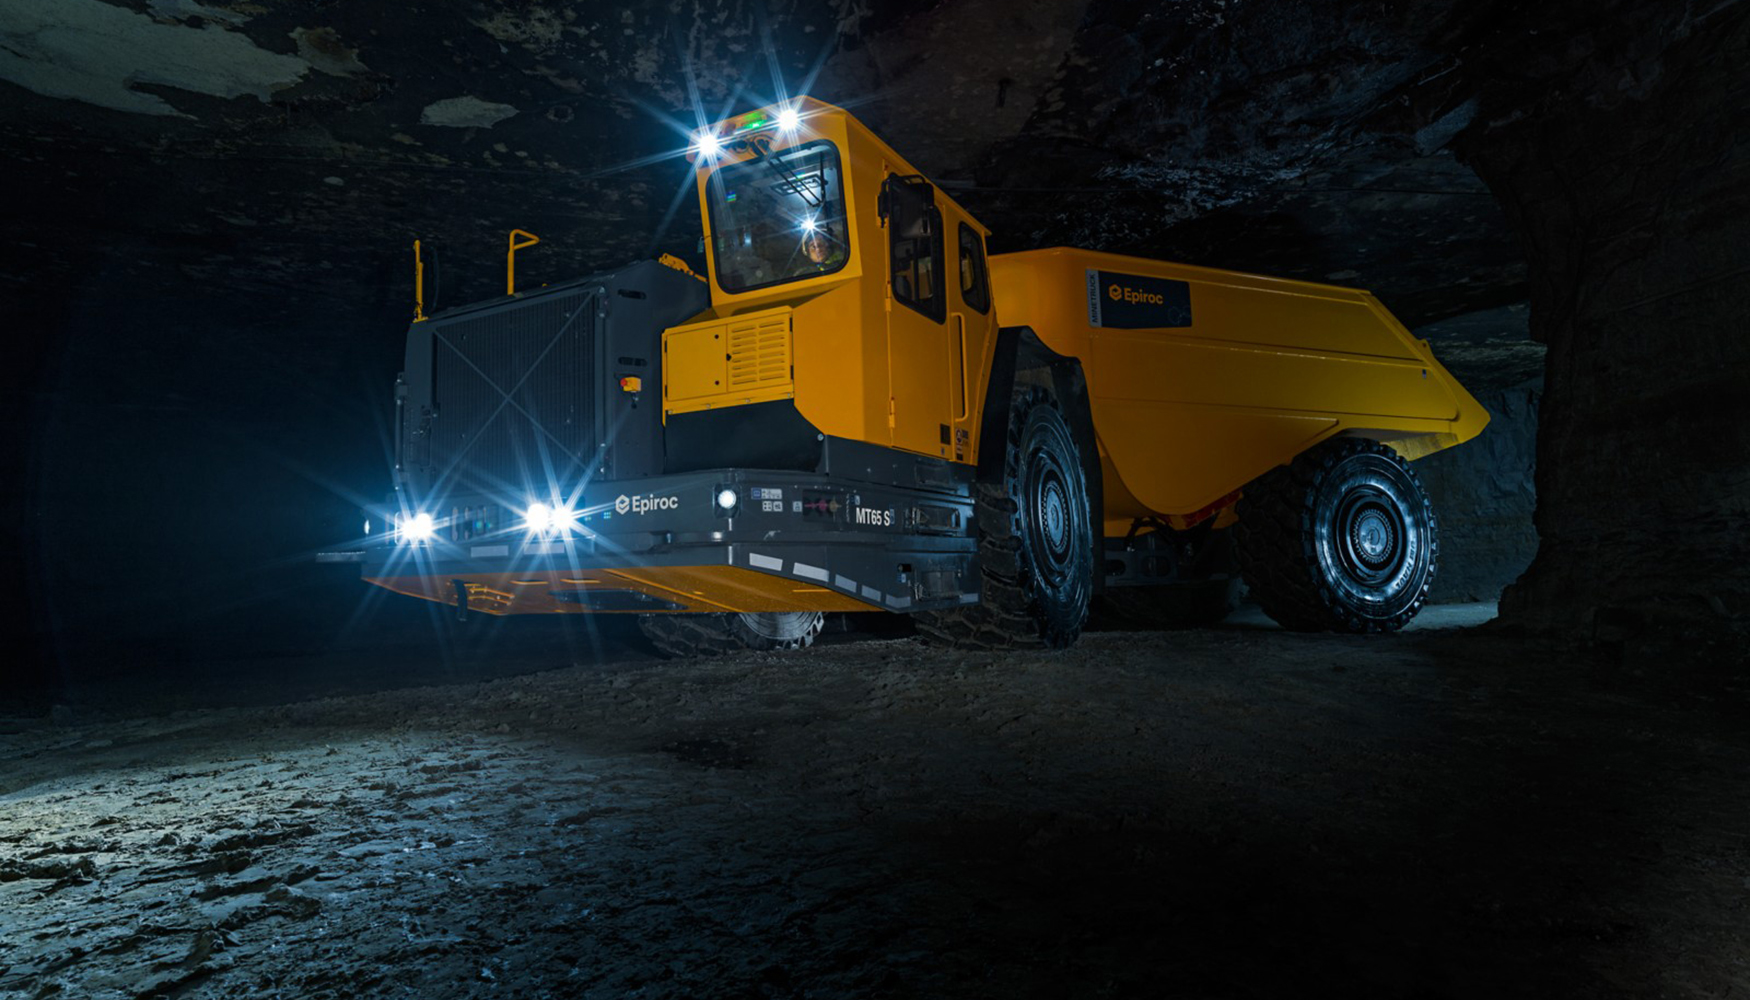  El camin minero ha mejorado su fiabilidad gracias a las nuevas actualizaciones y proporciona los ms altos estndares de seguridad...